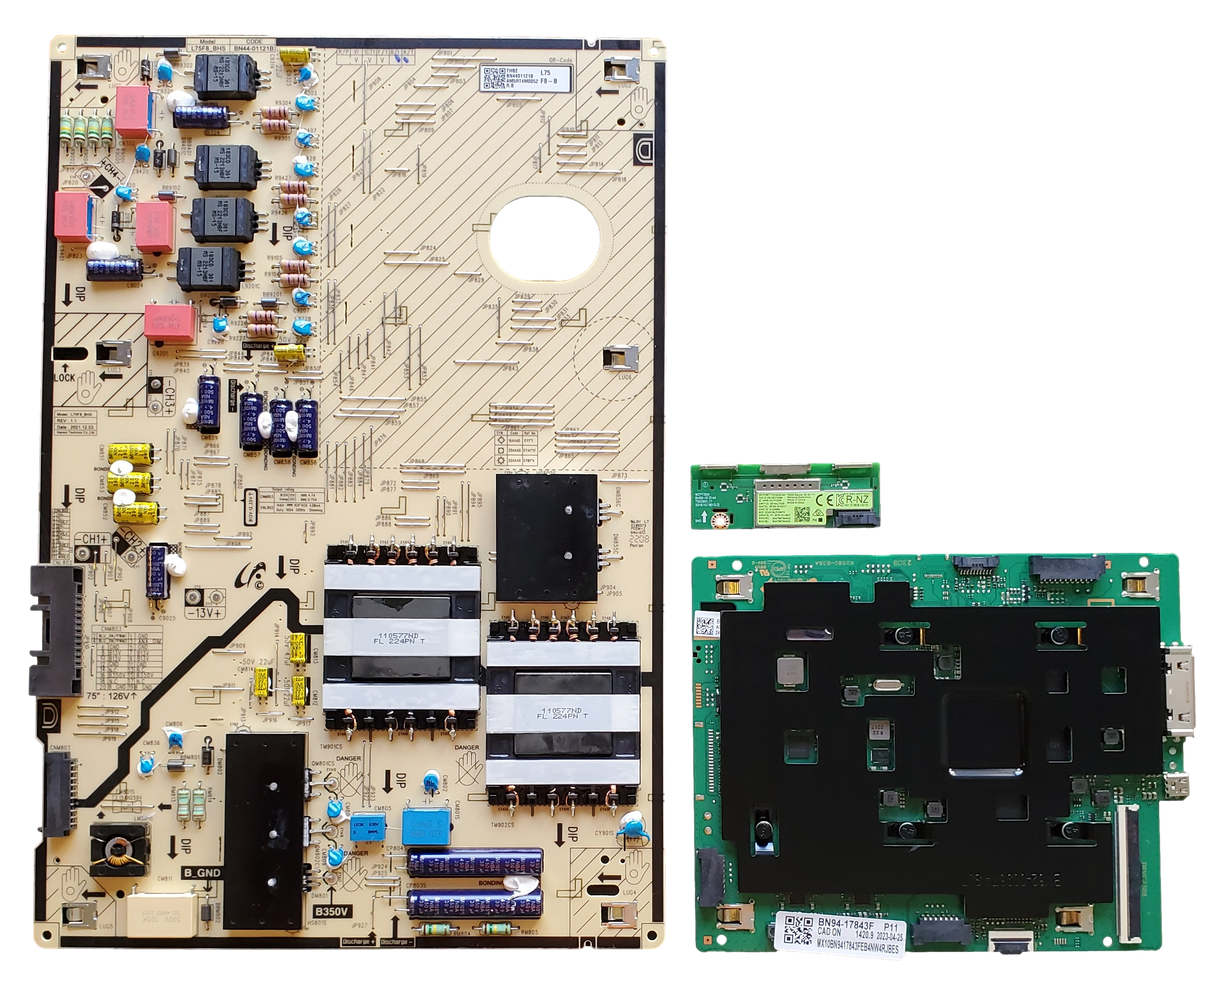 QN75LS03BAFXZA Samsung TV Repair Parts Kit, BN94-17461X / BN94-17843F Main Board, BN44-01121B Power Supply, BN59-01333A, QN75LS03BAFXZA